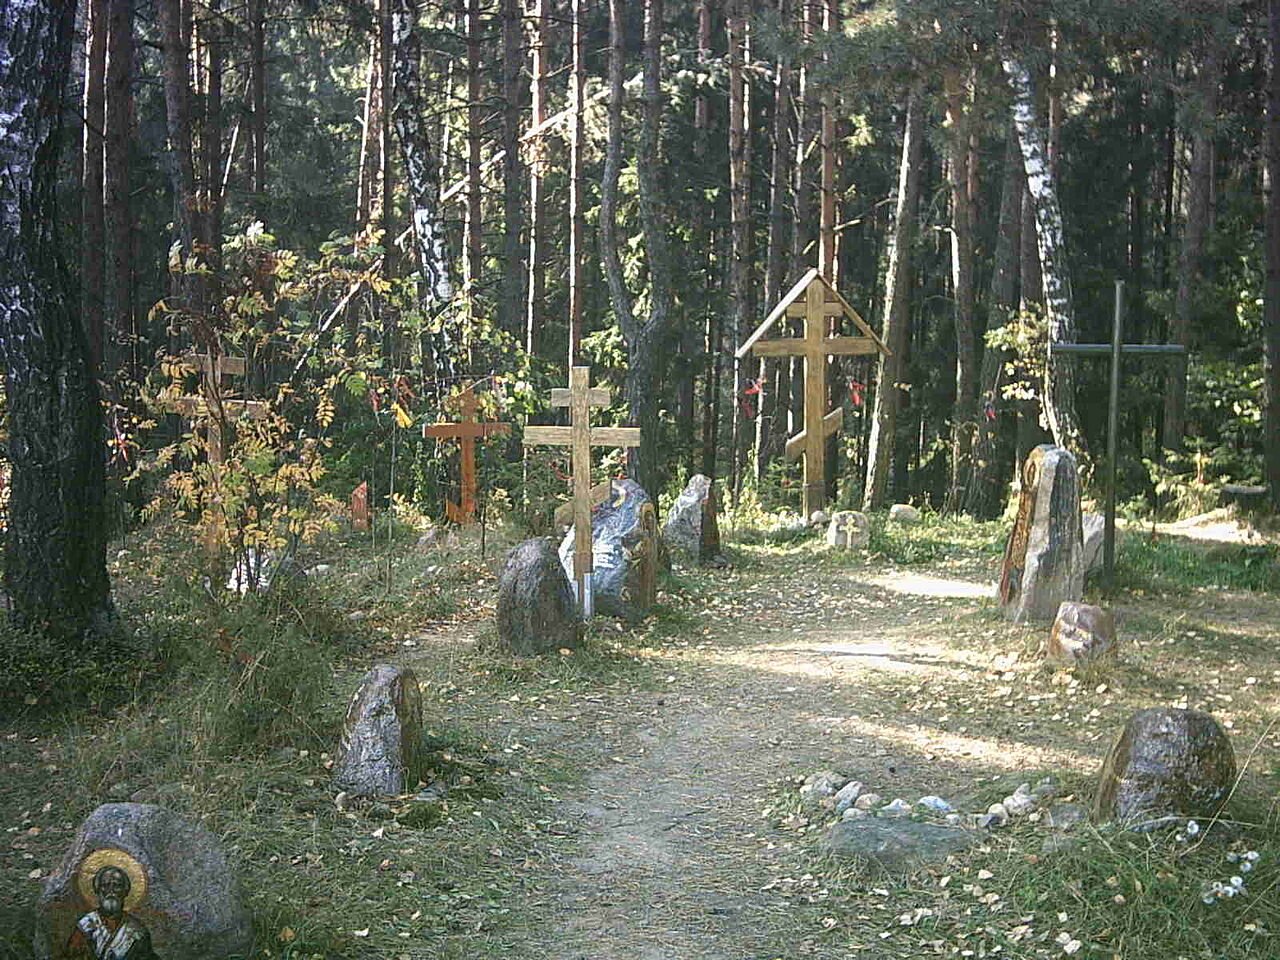 Zdjęcie przedstawia leśną polanę, na której leżą duże kamienie, a przy nich stoją drewniane krzyże prawosławne wbite w ziemie.